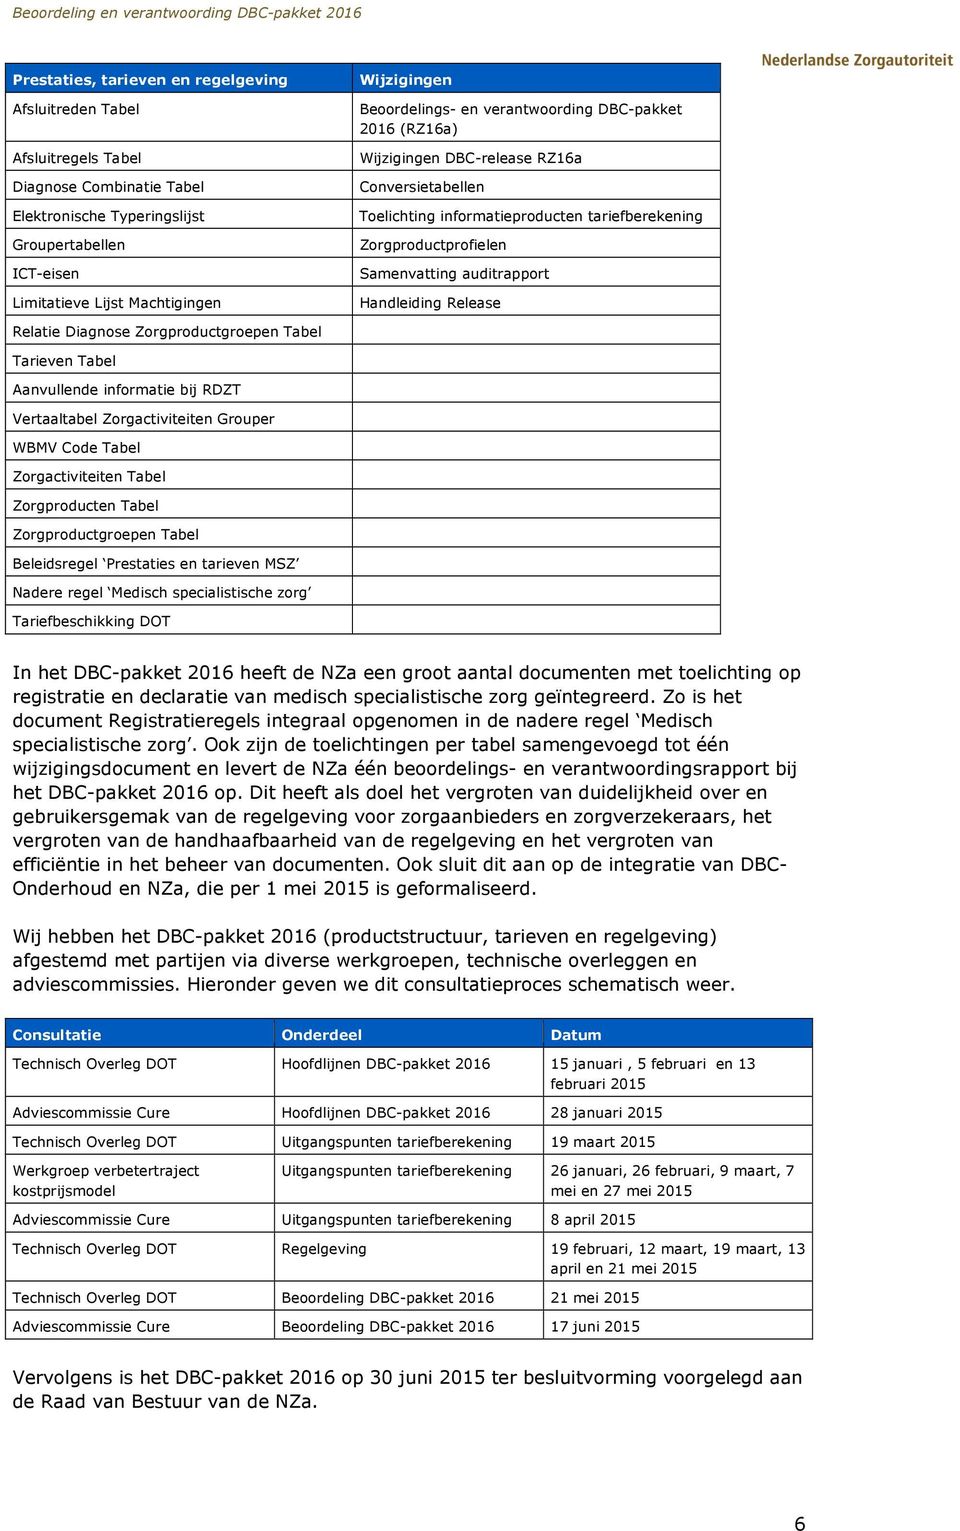 Handleiding Release Relatie Diagnose Zorgproductgroepen Tabel Tarieven Tabel Aanvullende informatie bij RDZT Vertaaltabel Zorgactiviteiten Grouper WBMV Code Tabel Zorgactiviteiten Tabel Zorgproducten